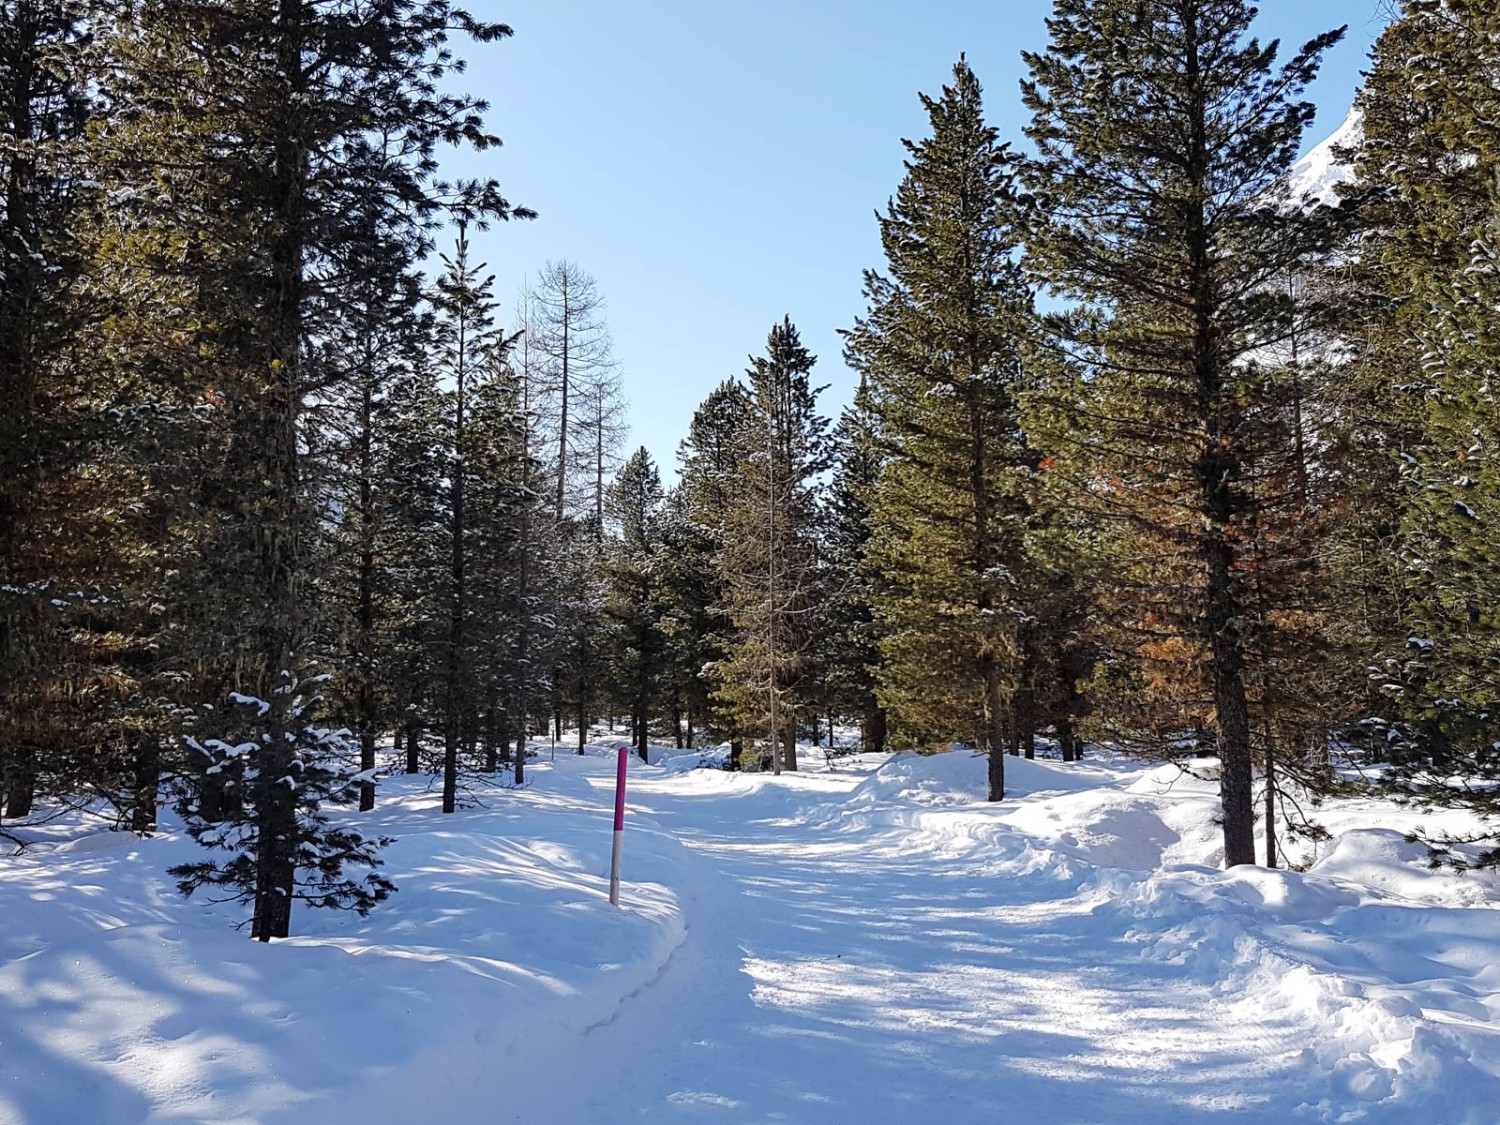 Hormis la calèche, aucun véhicule ne circule sur le chemin de randonnée hivernale. Photo: Laura Riedi